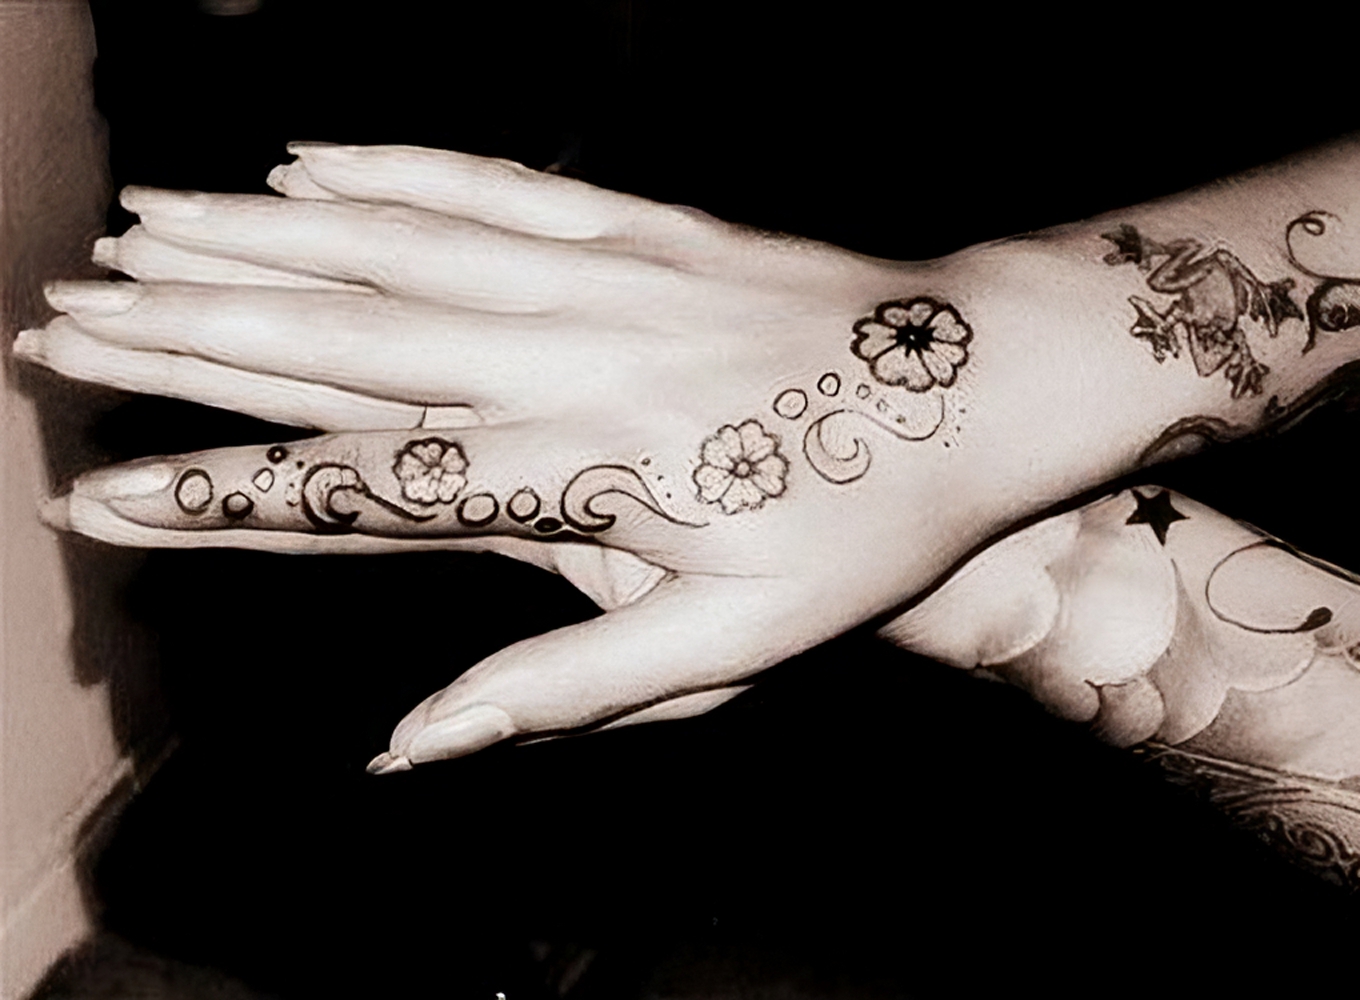 Handgelenk Tattoo